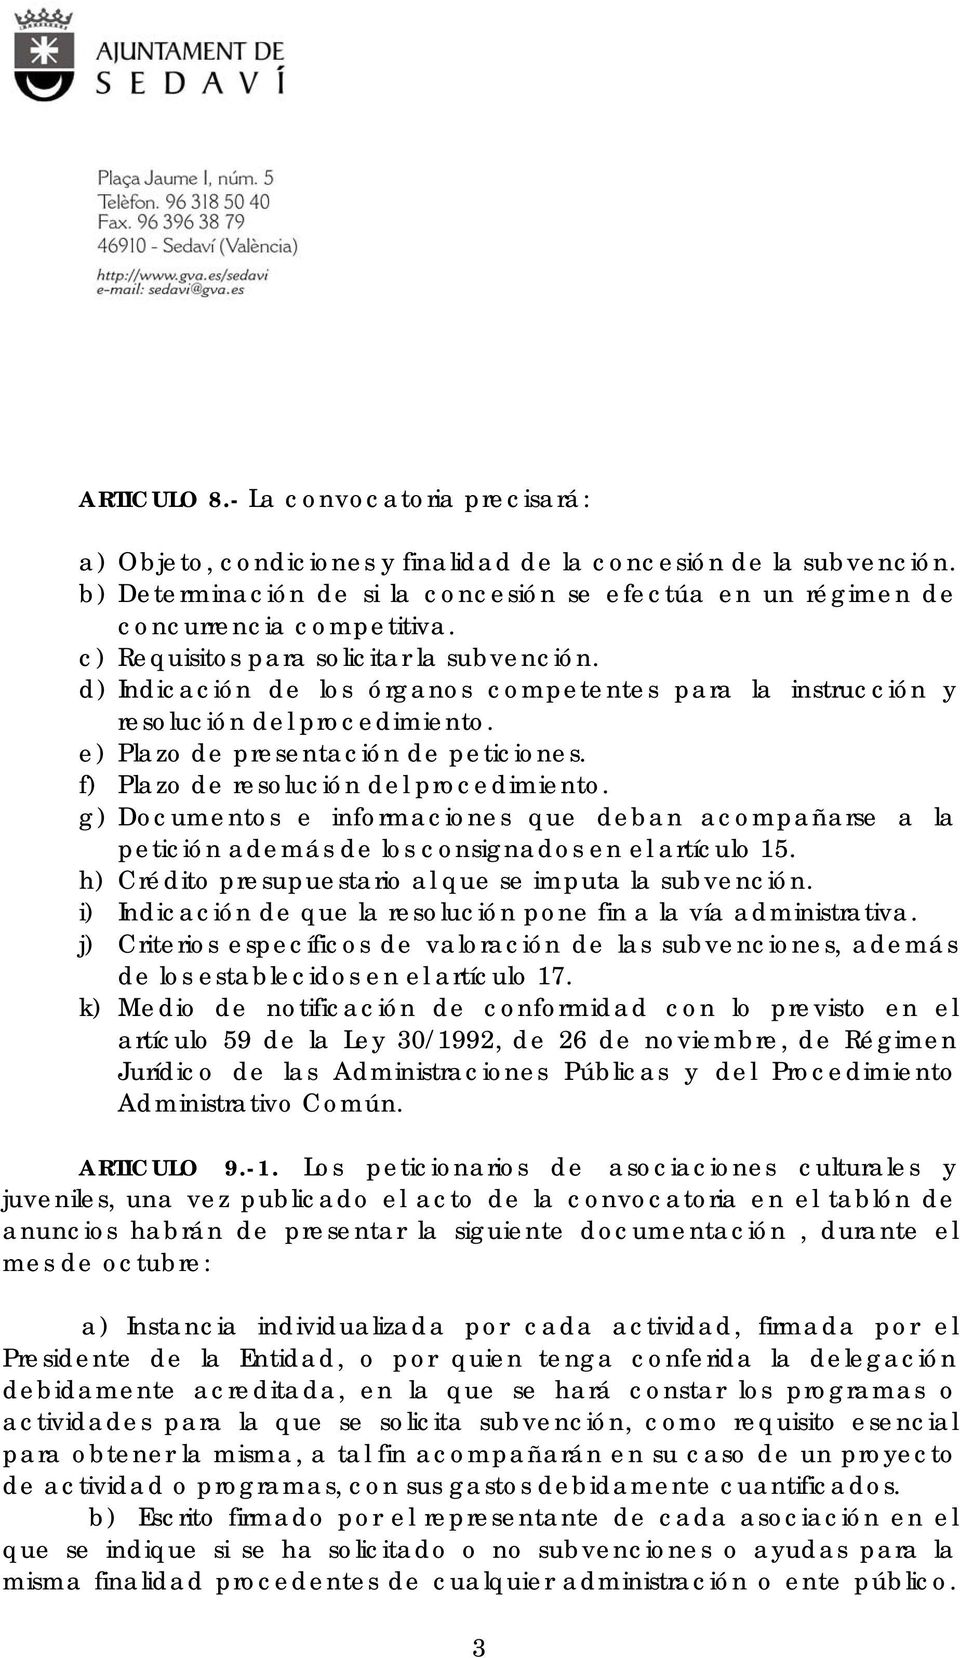 f) Plazo de resolución del procedimiento. g) Documentos e informaciones que deban acompañarse a la petición además de los consignados en el artículo 15.